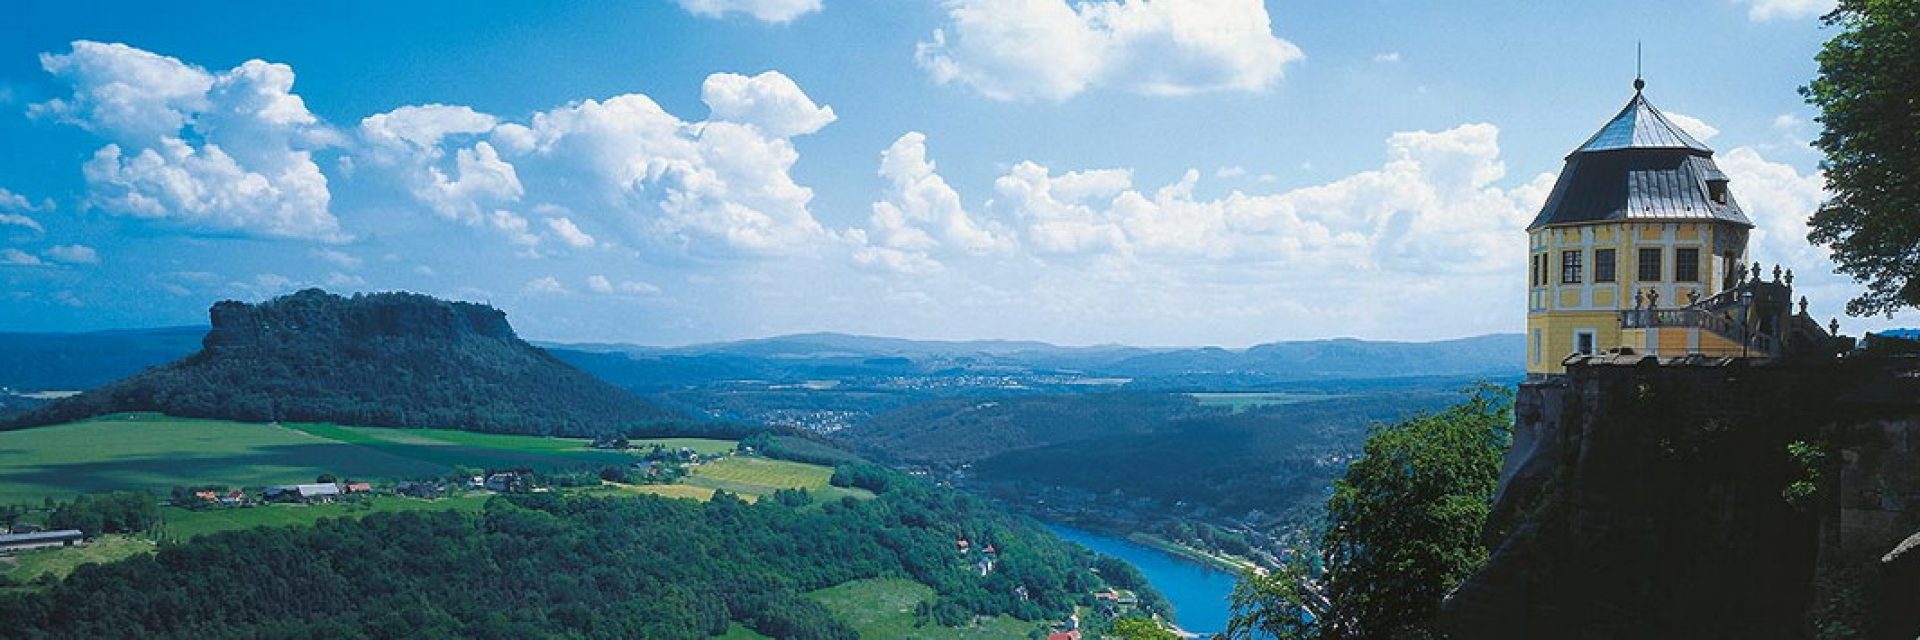 Blick in die Sächsische Schweiz